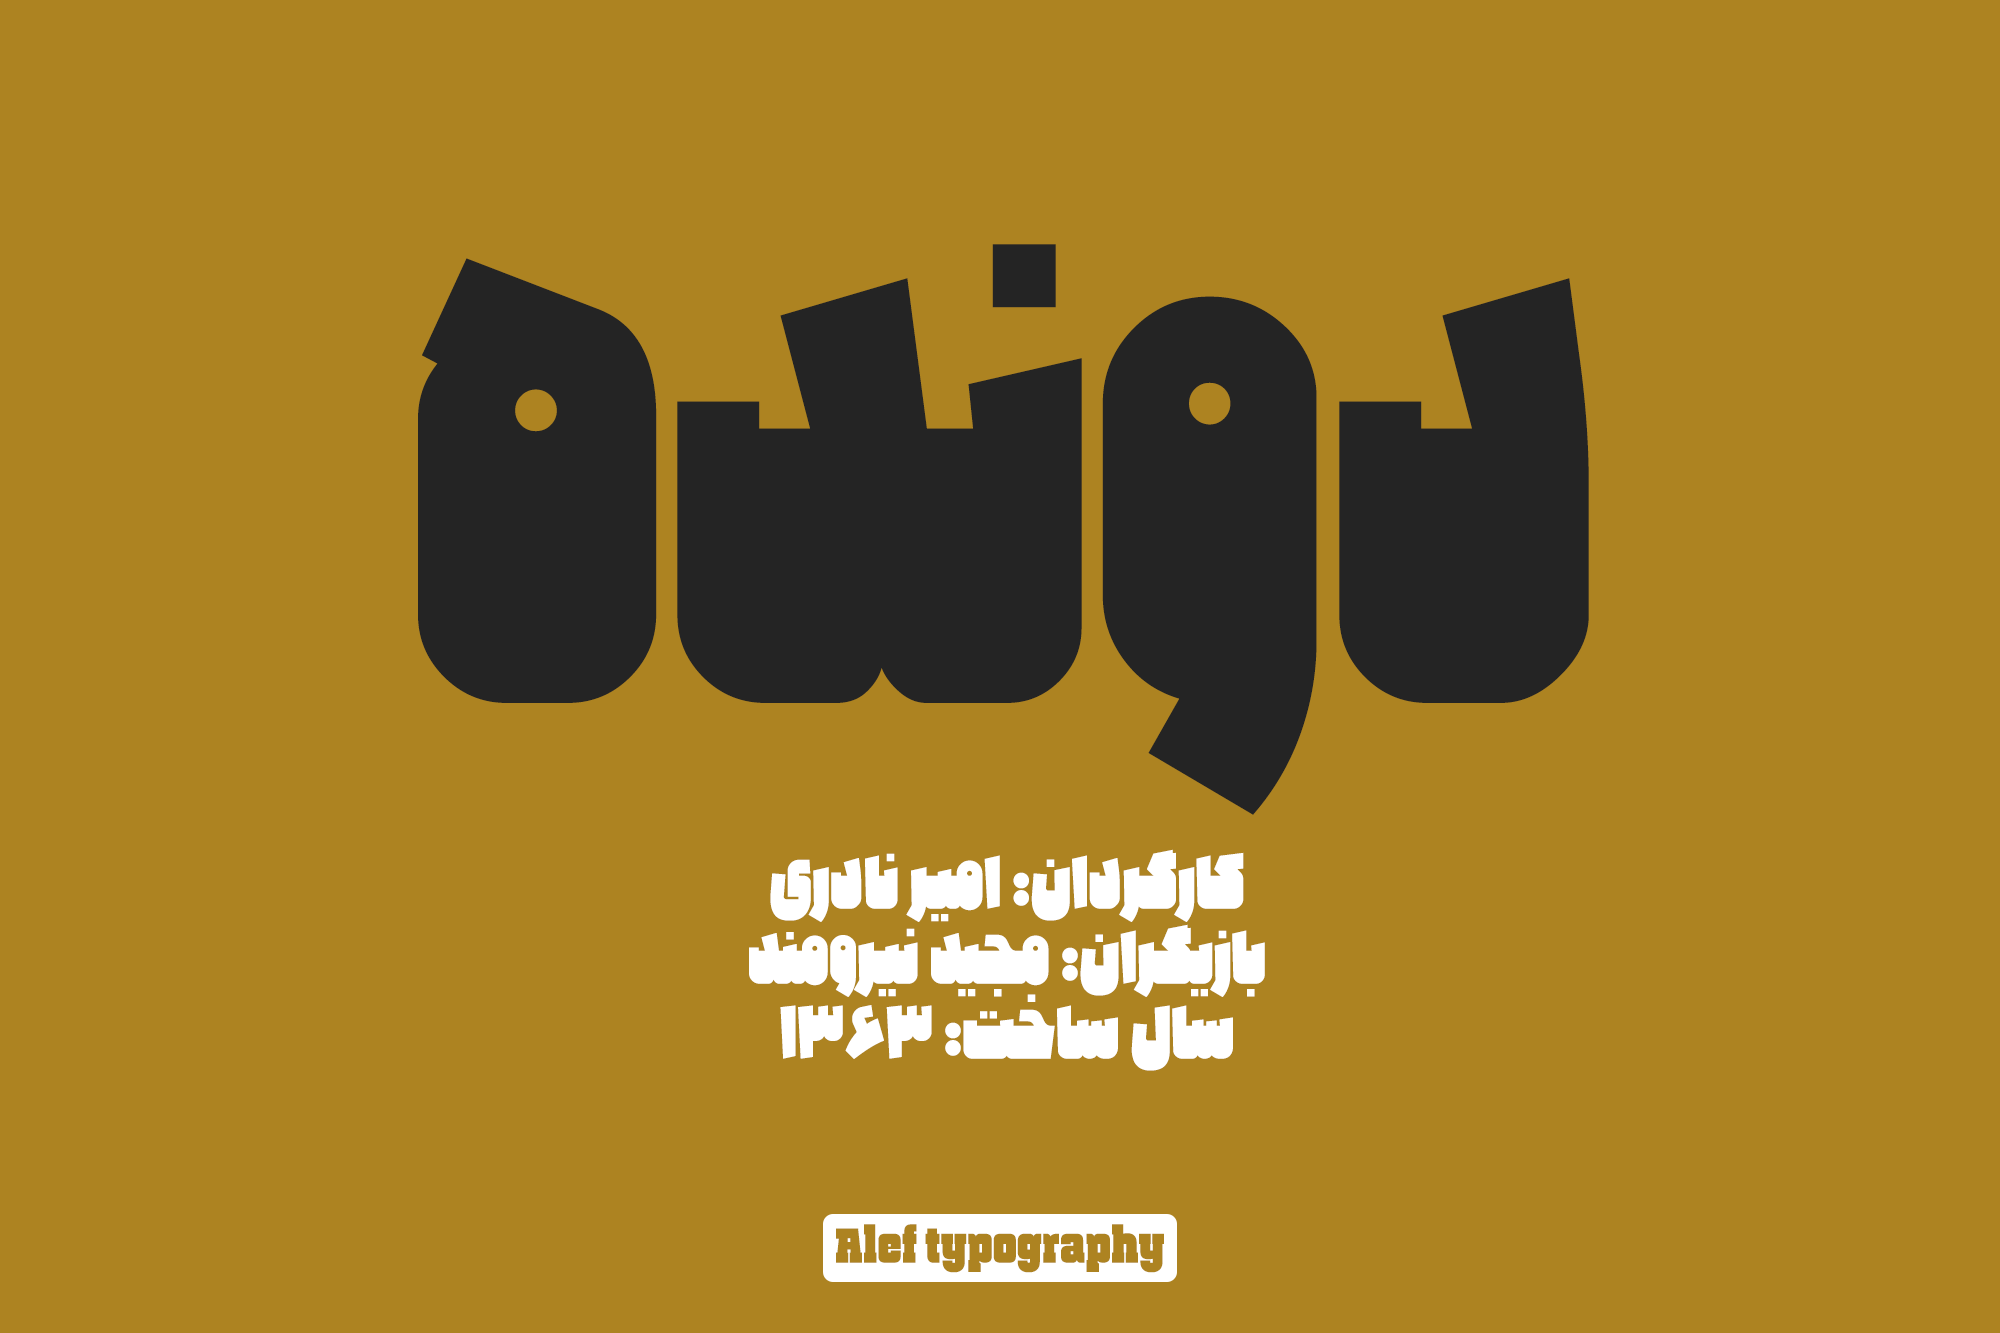 Alef-typography01